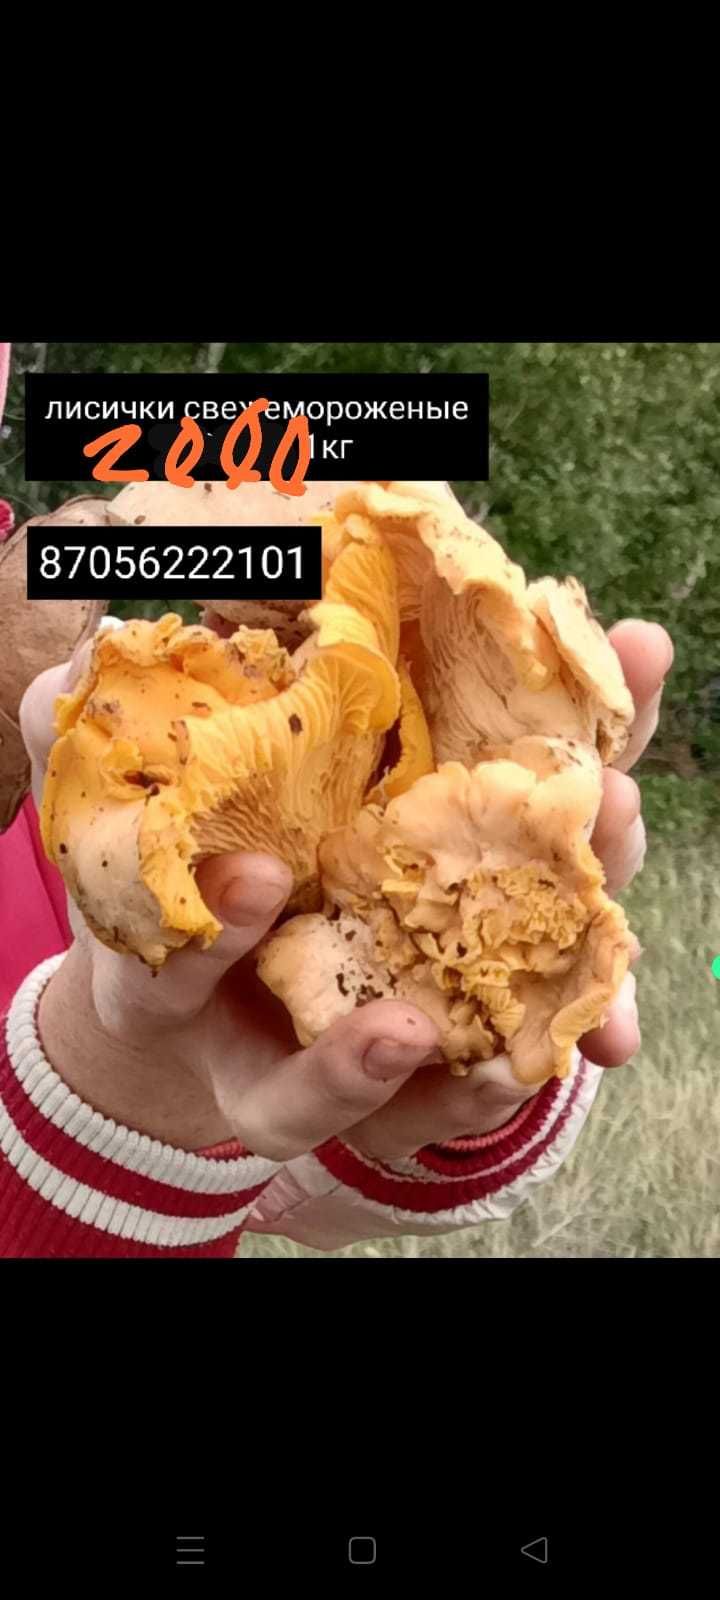 Продам свежие грибы лисички